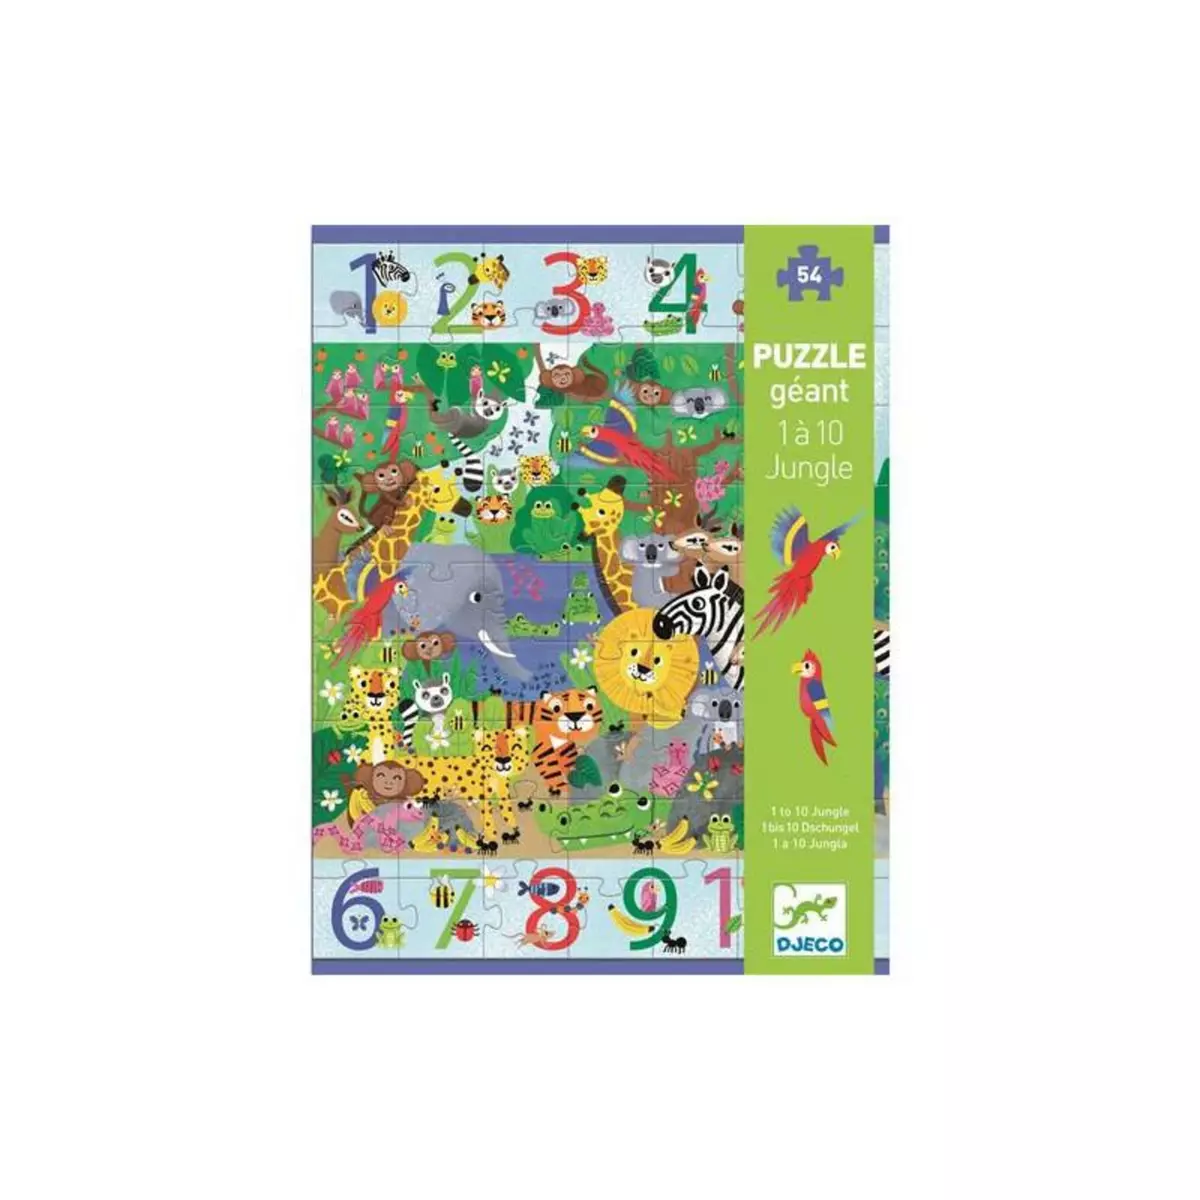 Djeco Puzzle enfant 54 pièces Djeco 1 à 10 Jungle